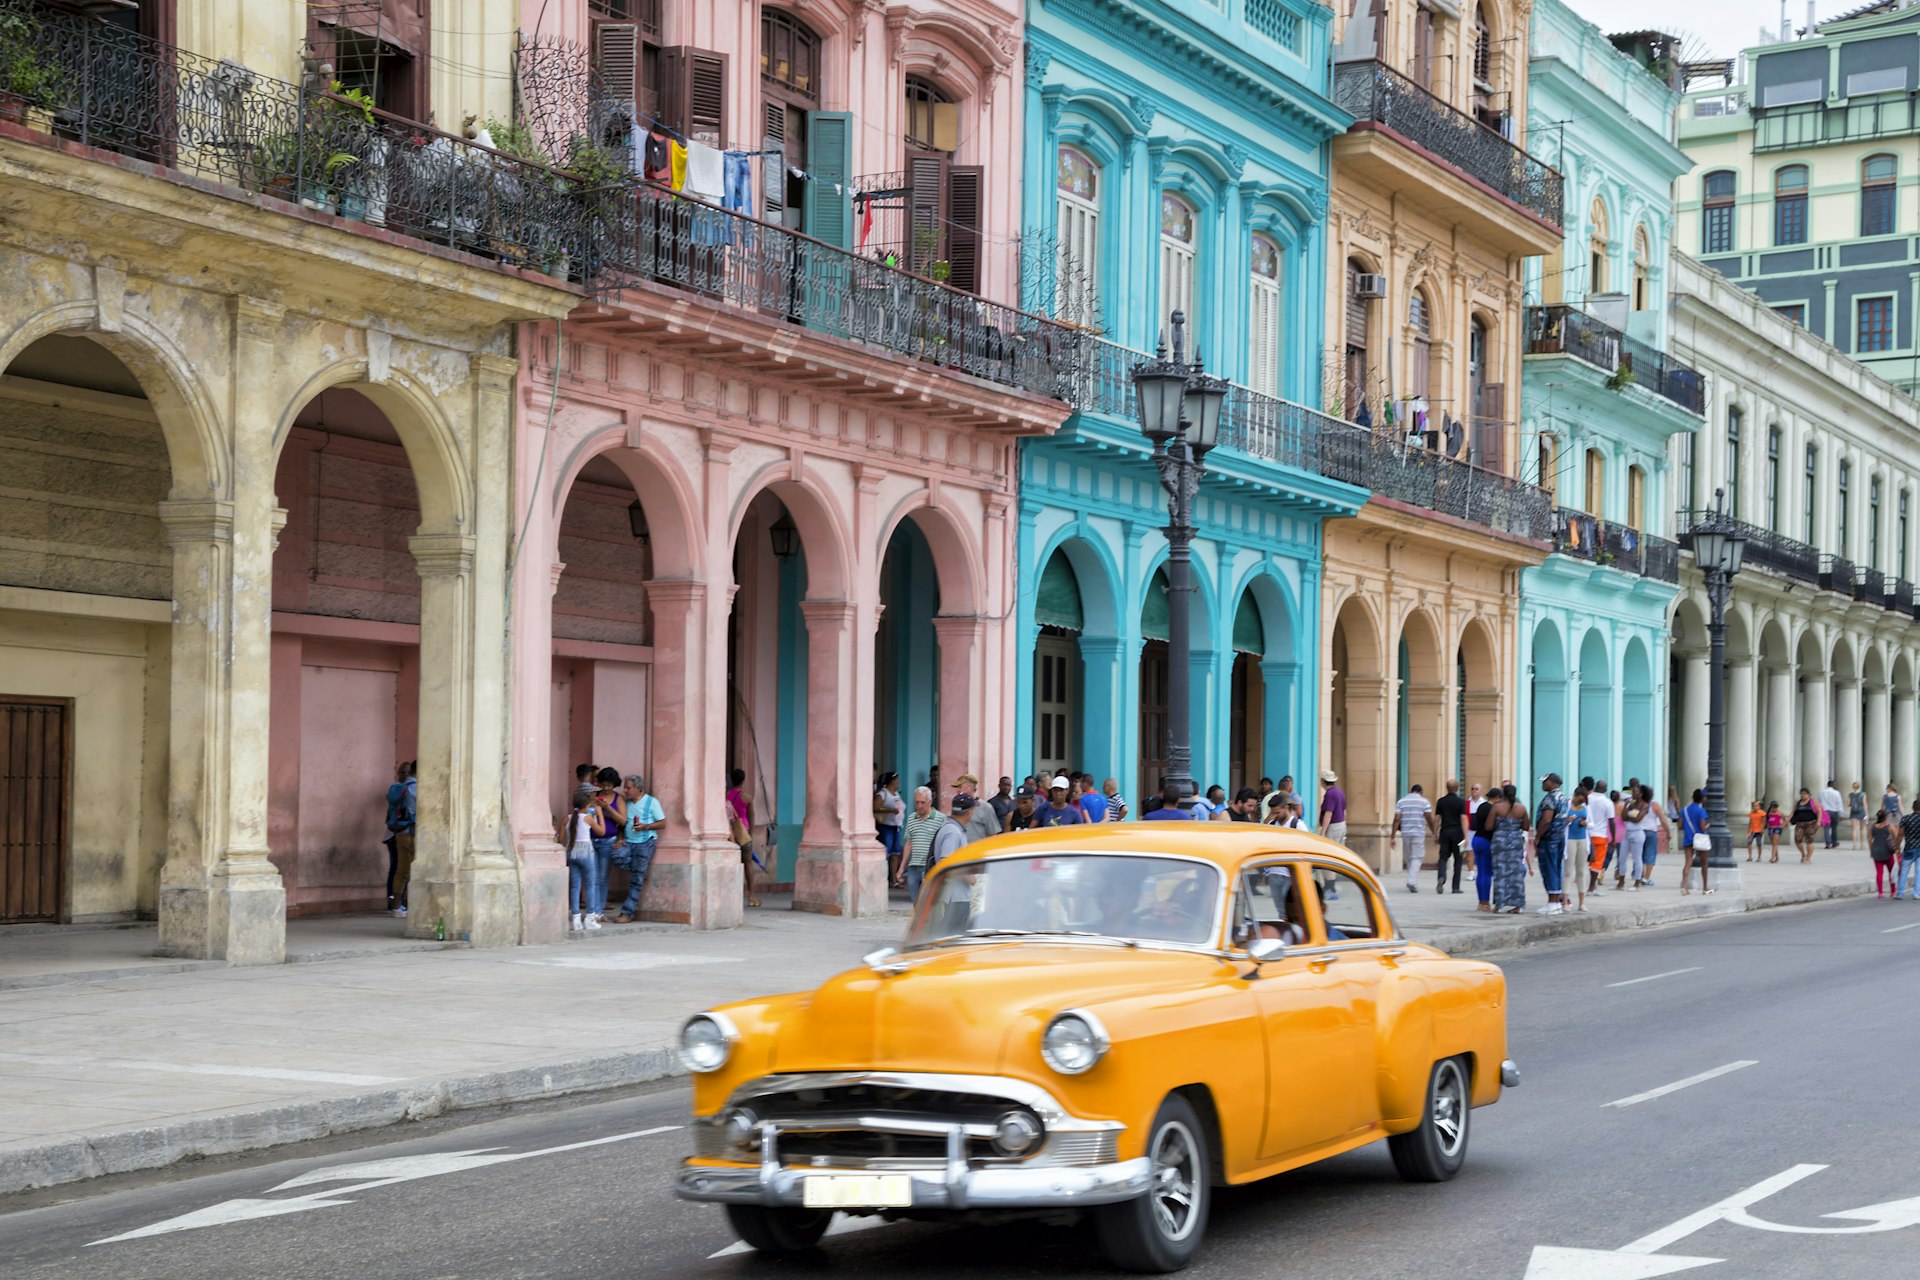 Vintage American car in front of colorful buildings in Old Havana, Cuba